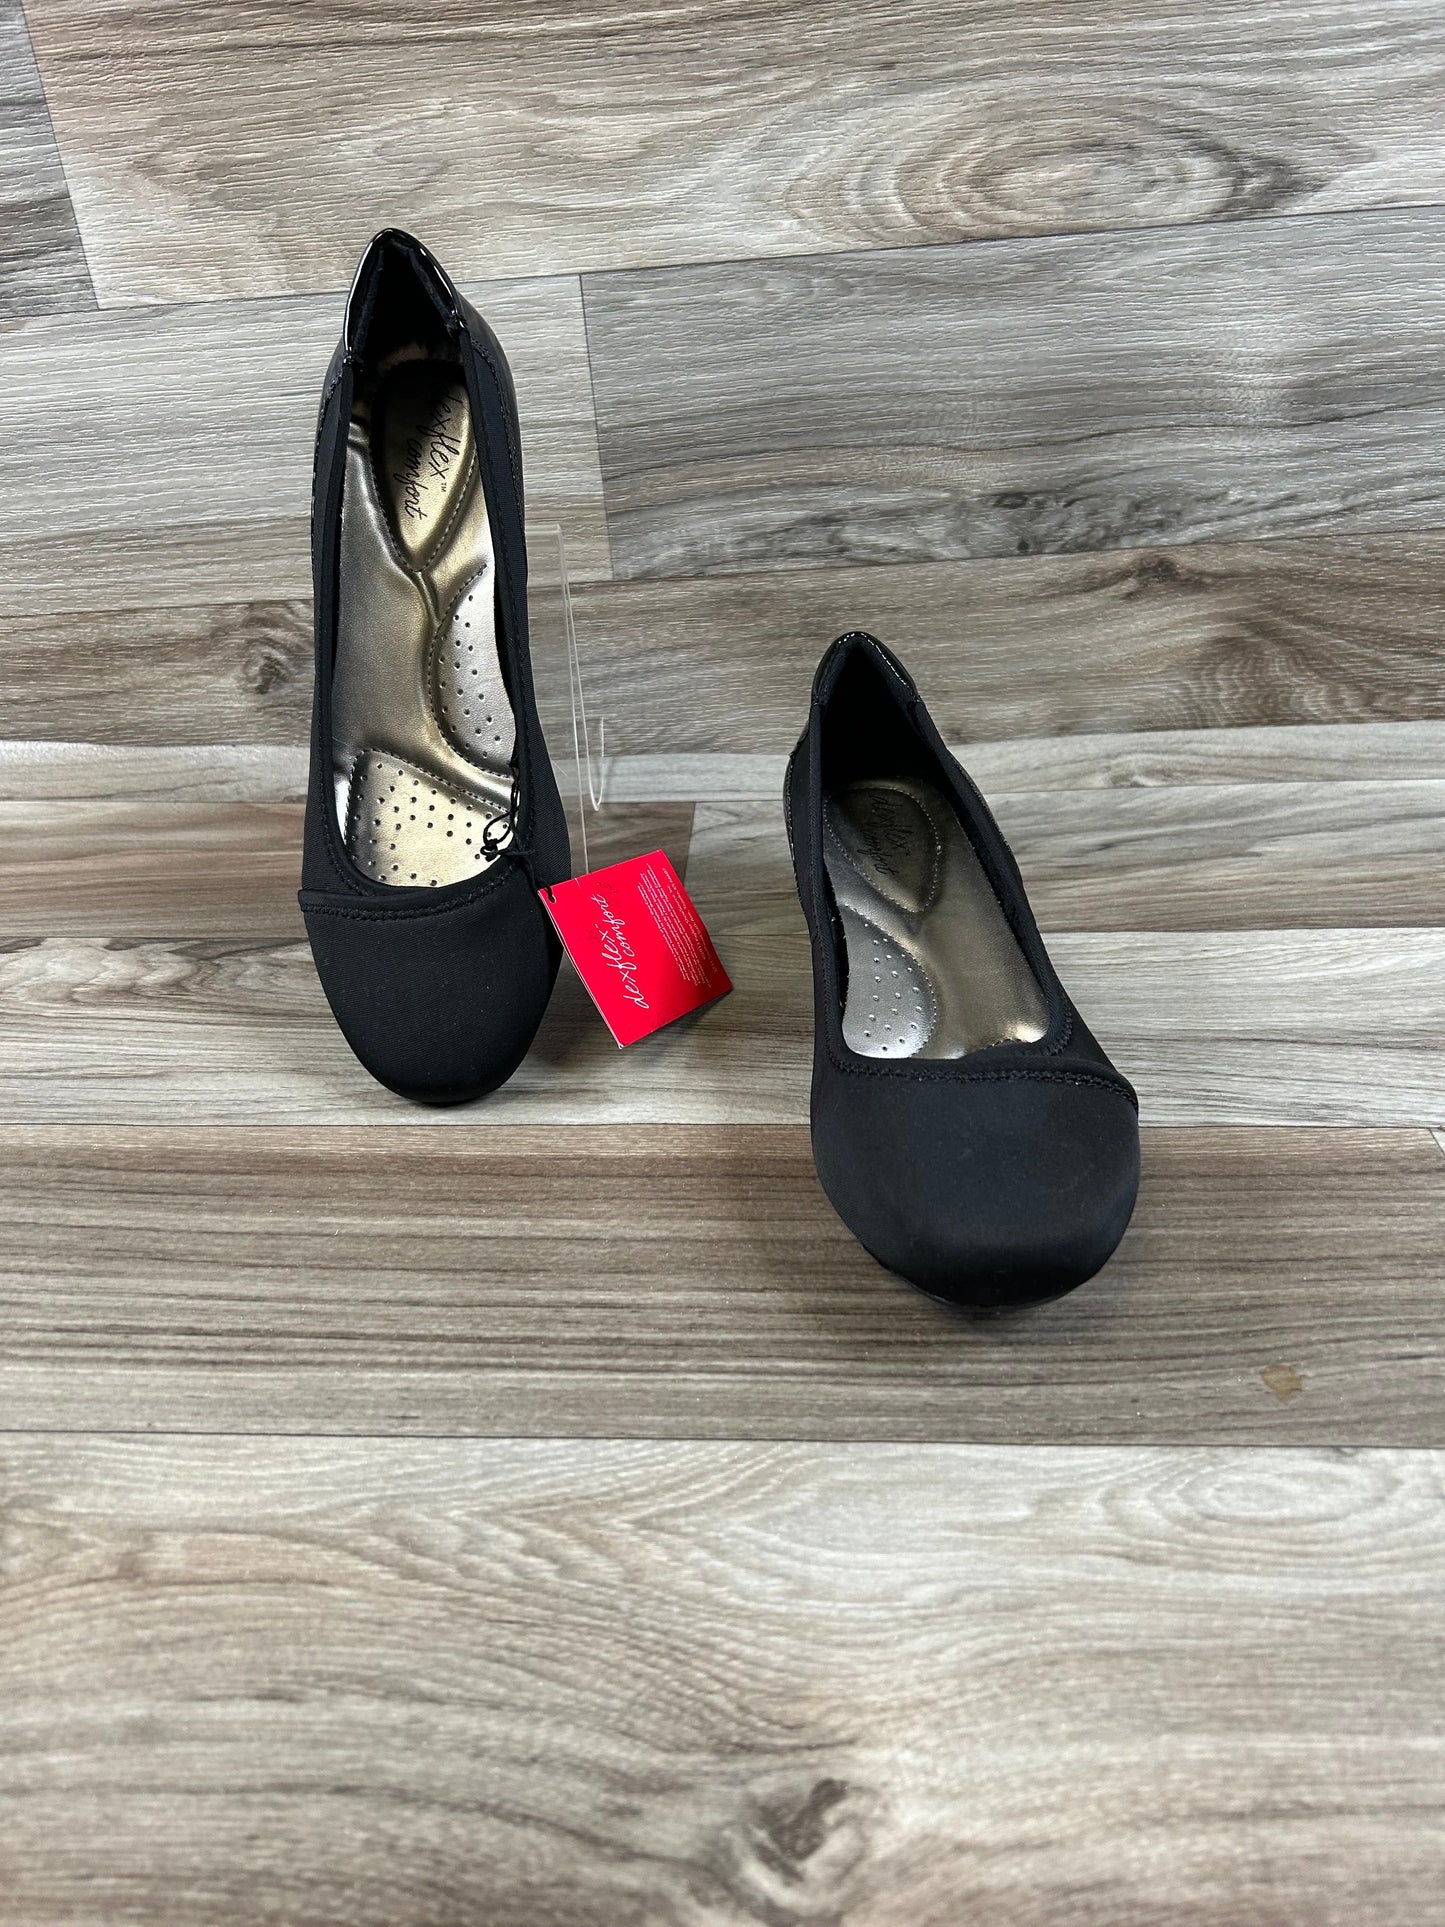 Black Shoes Heels Wedge Dexflex, Size 10